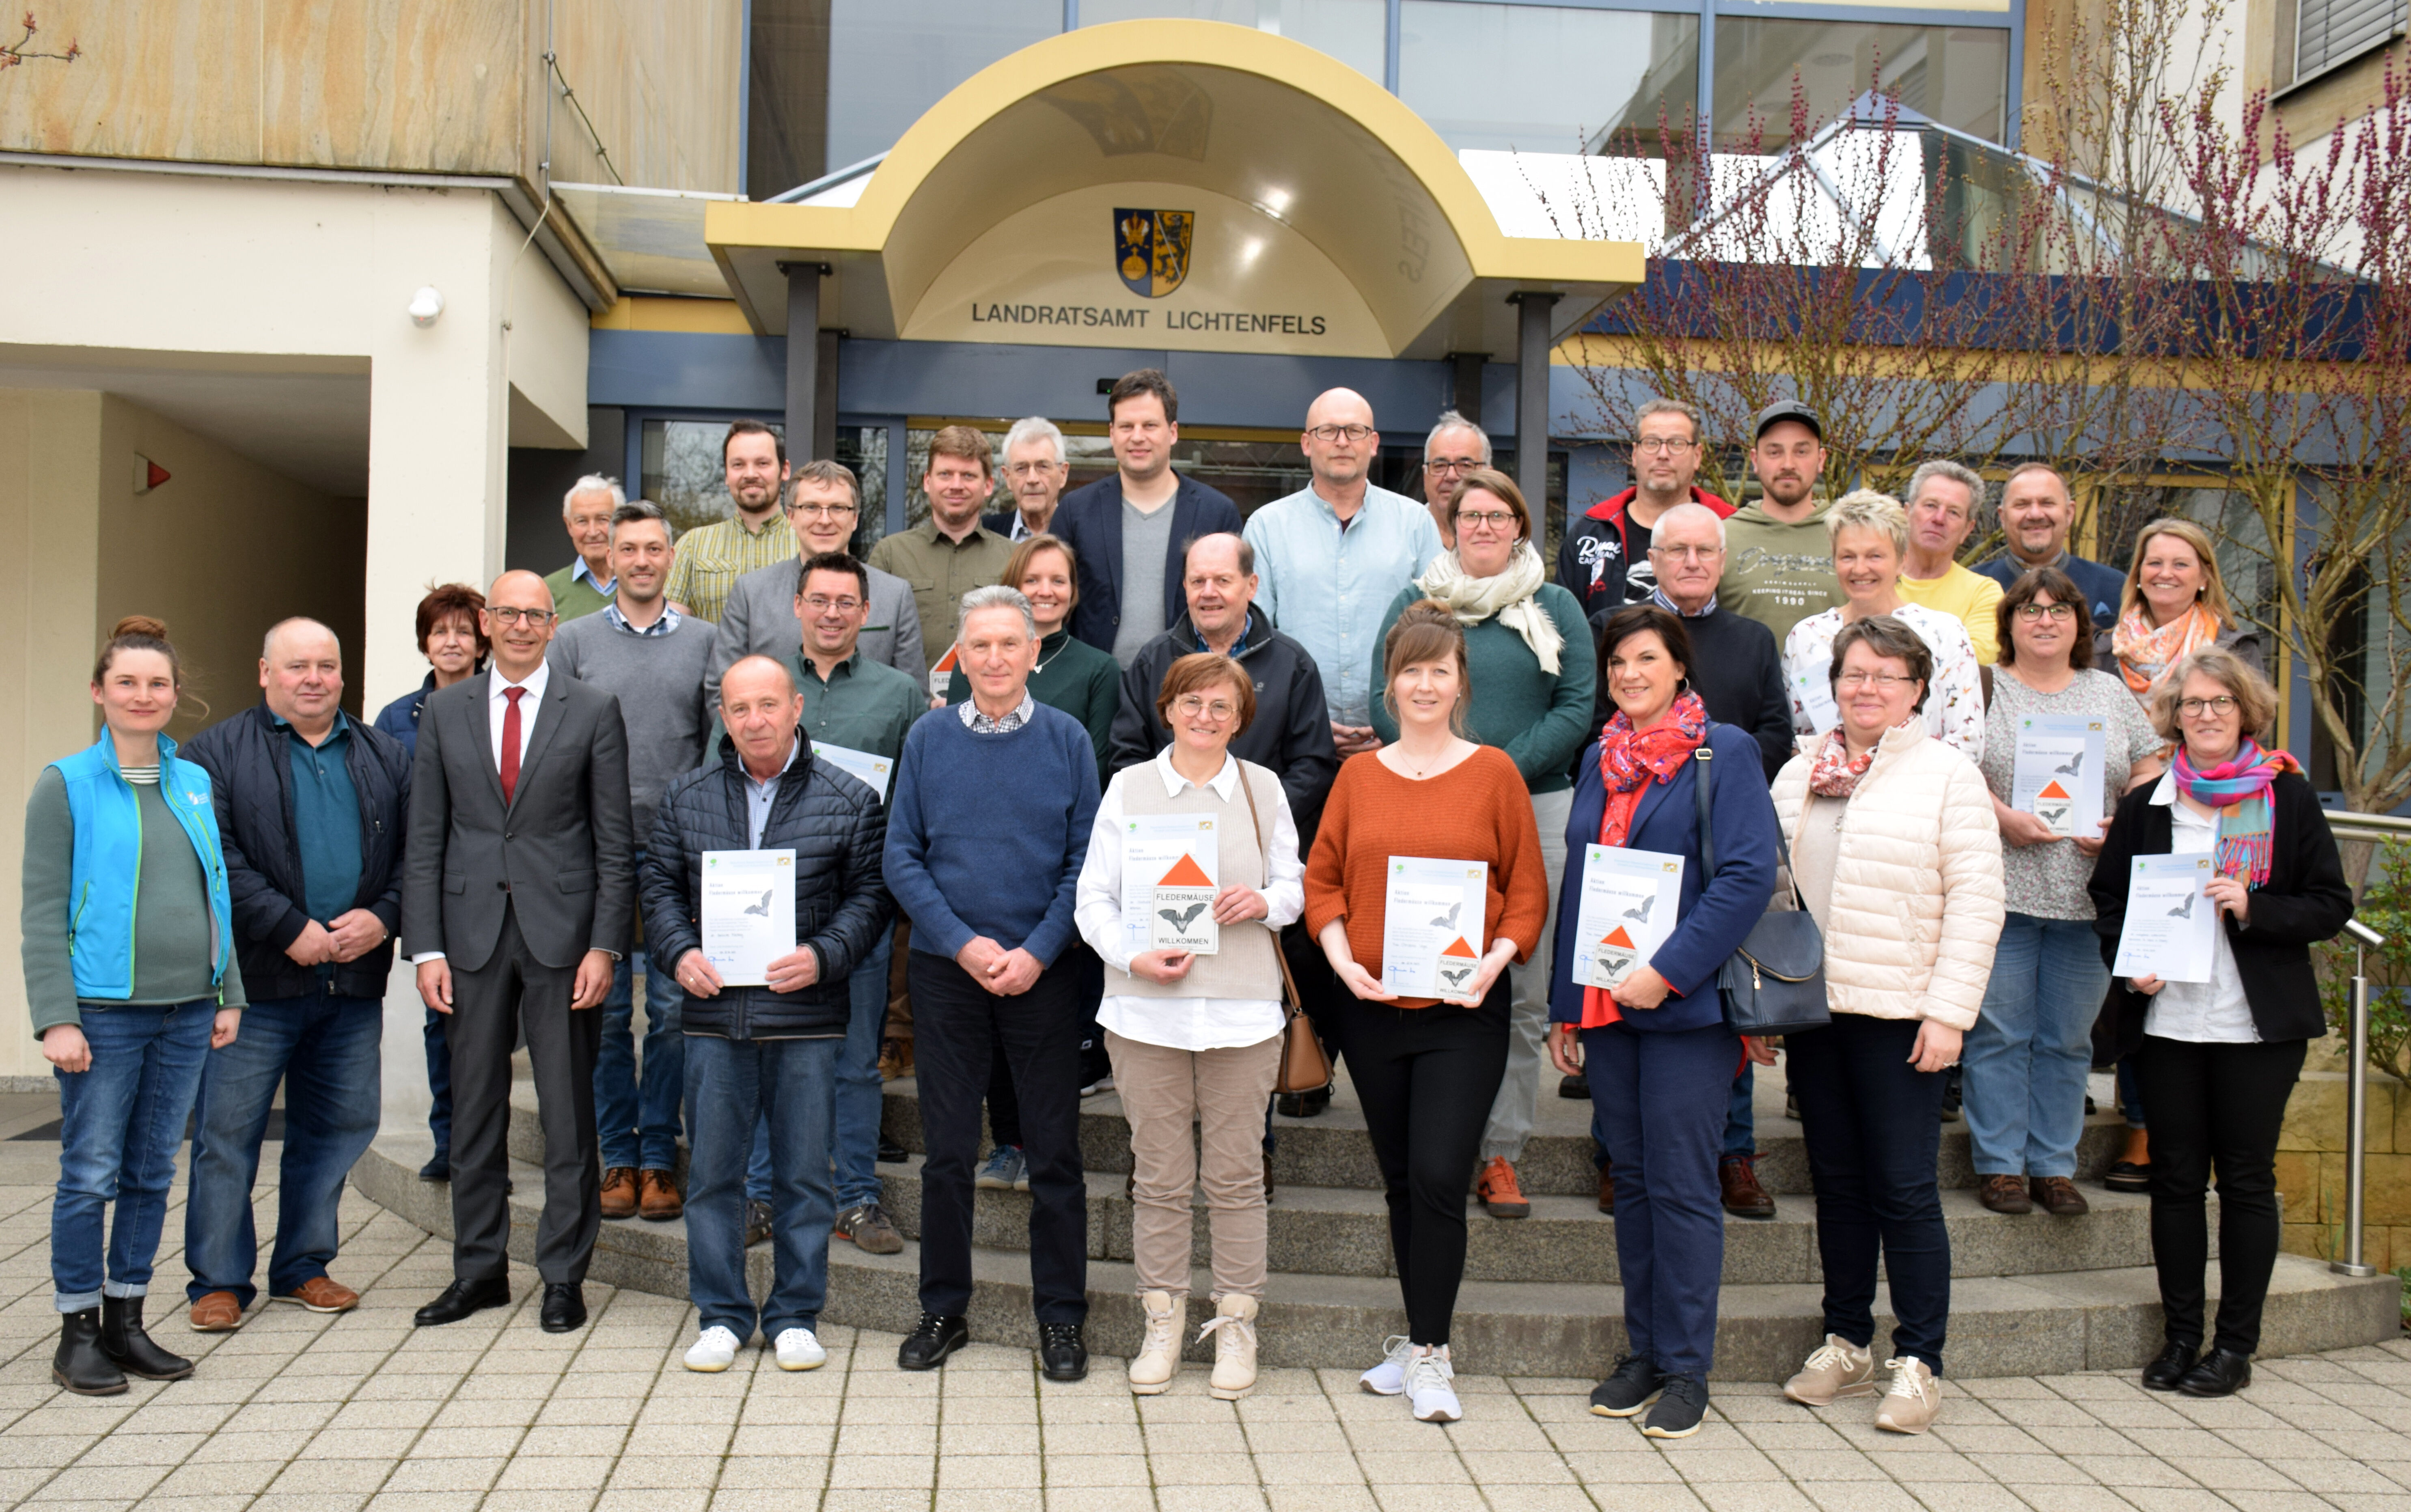 19 Projekte für den Fledermausschutz im Landkreis Lichtenfels wurden ausgezeichnet. Foto: Heidi Bauer